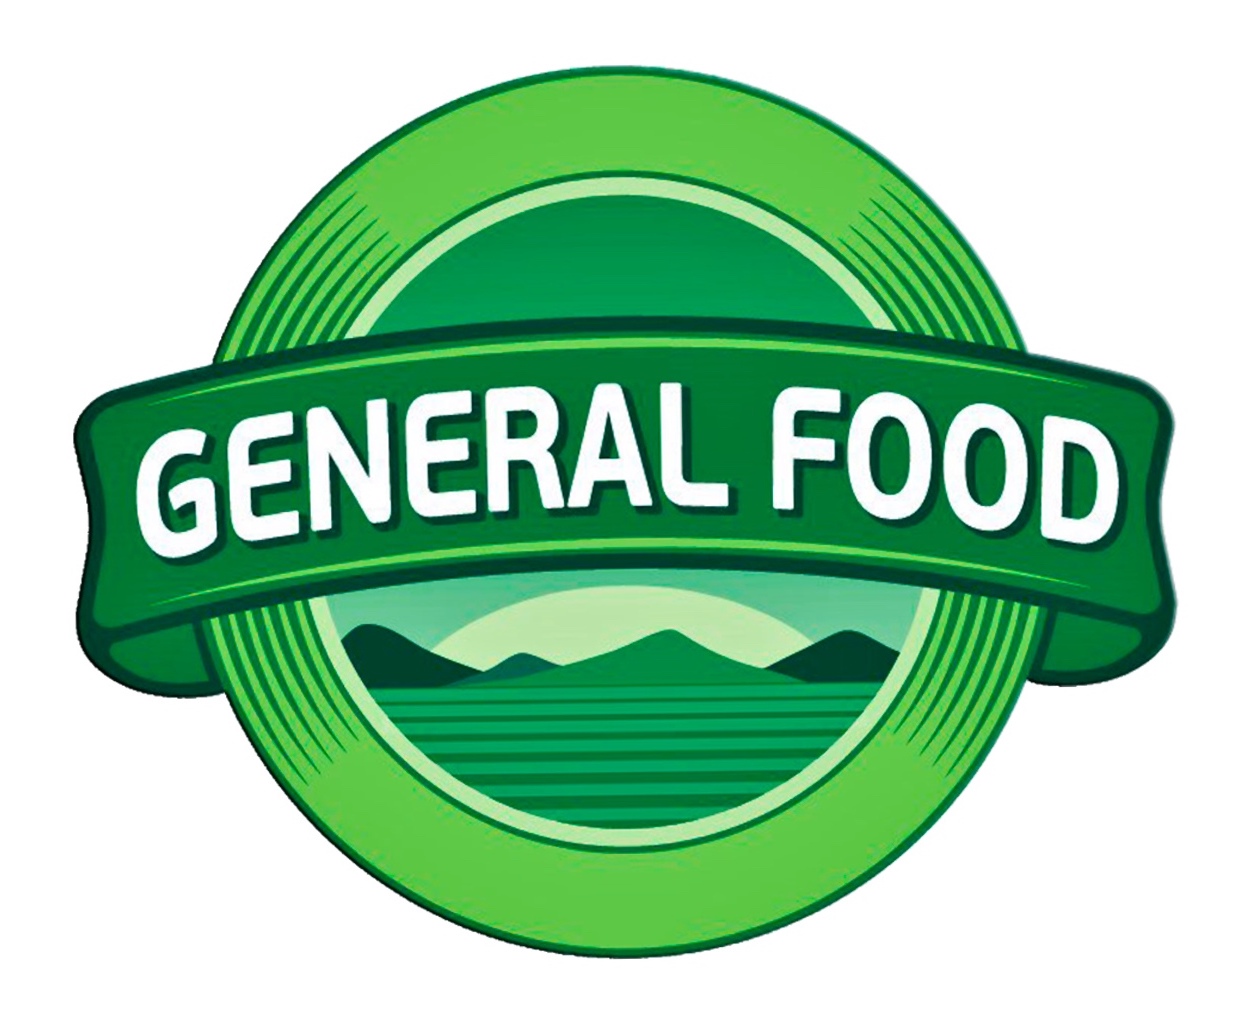 General Food — индивидуальный рацион для повседневного правильного питания